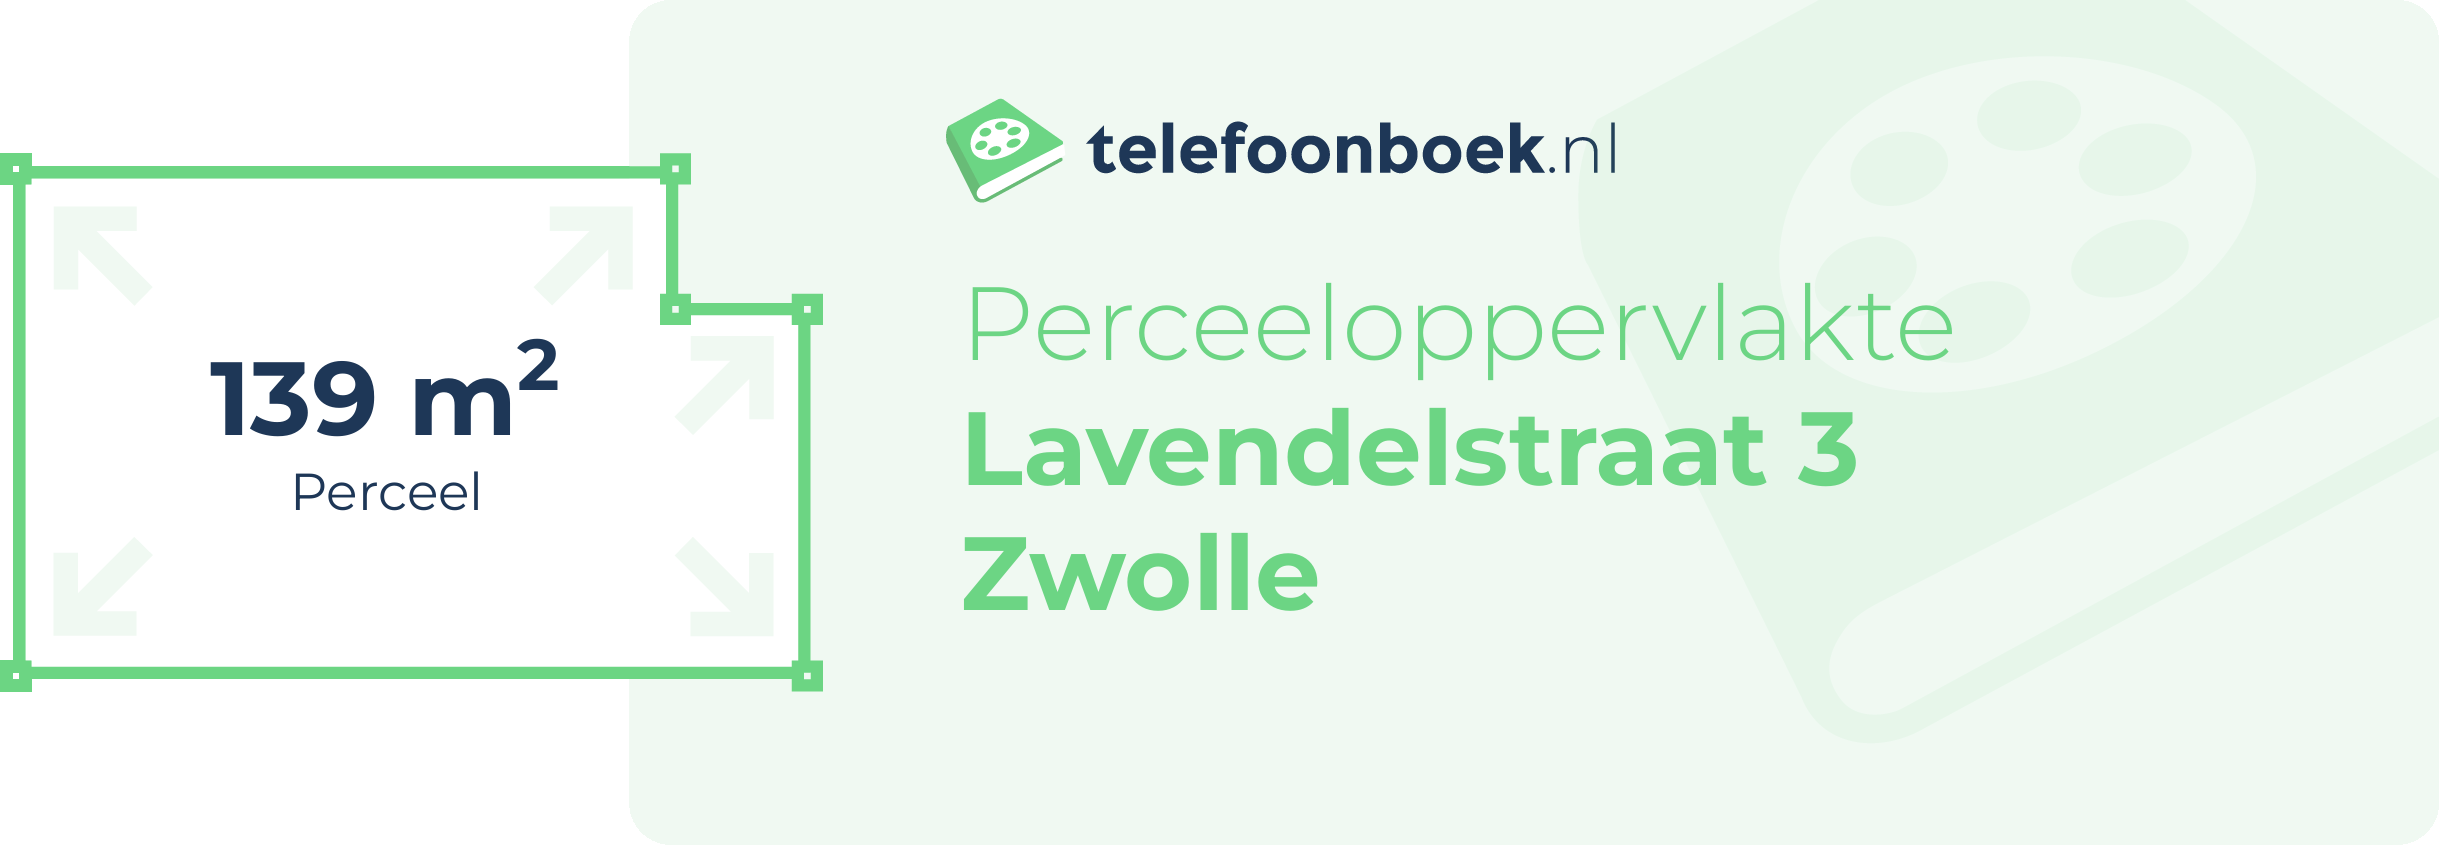 Perceeloppervlakte Lavendelstraat 3 Zwolle